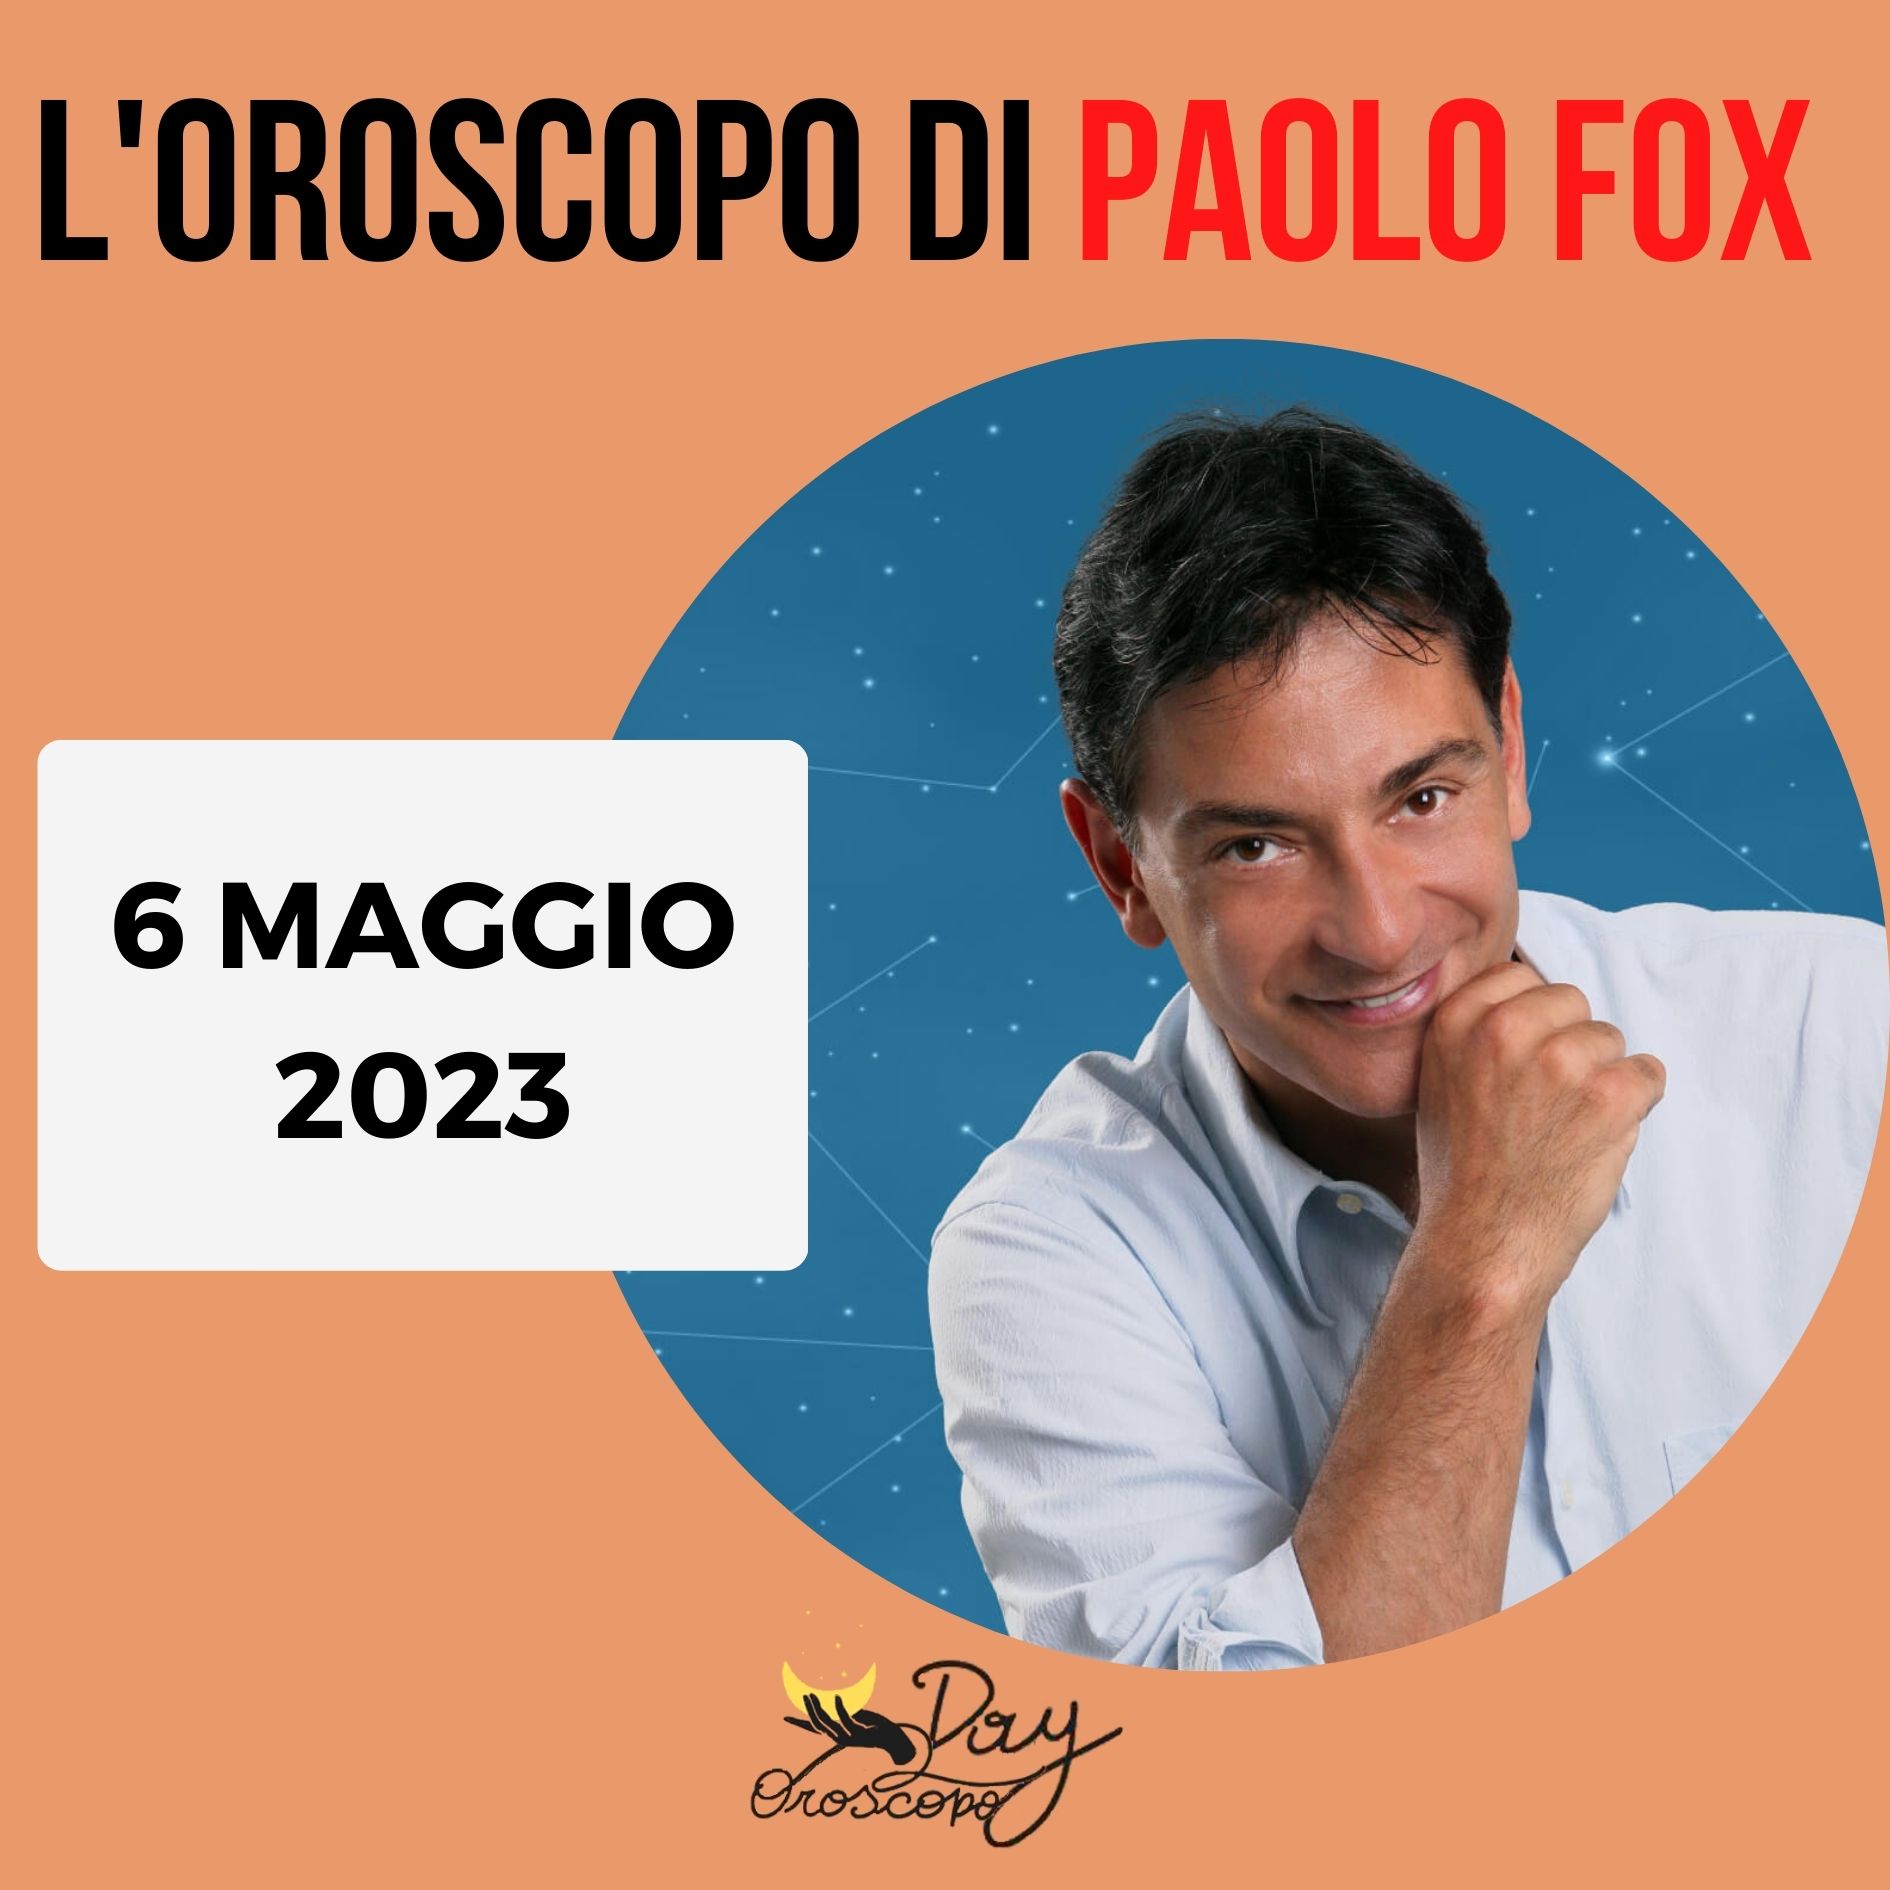 Oroscopo oggi domani Paolo Fox 6 maggio 2023